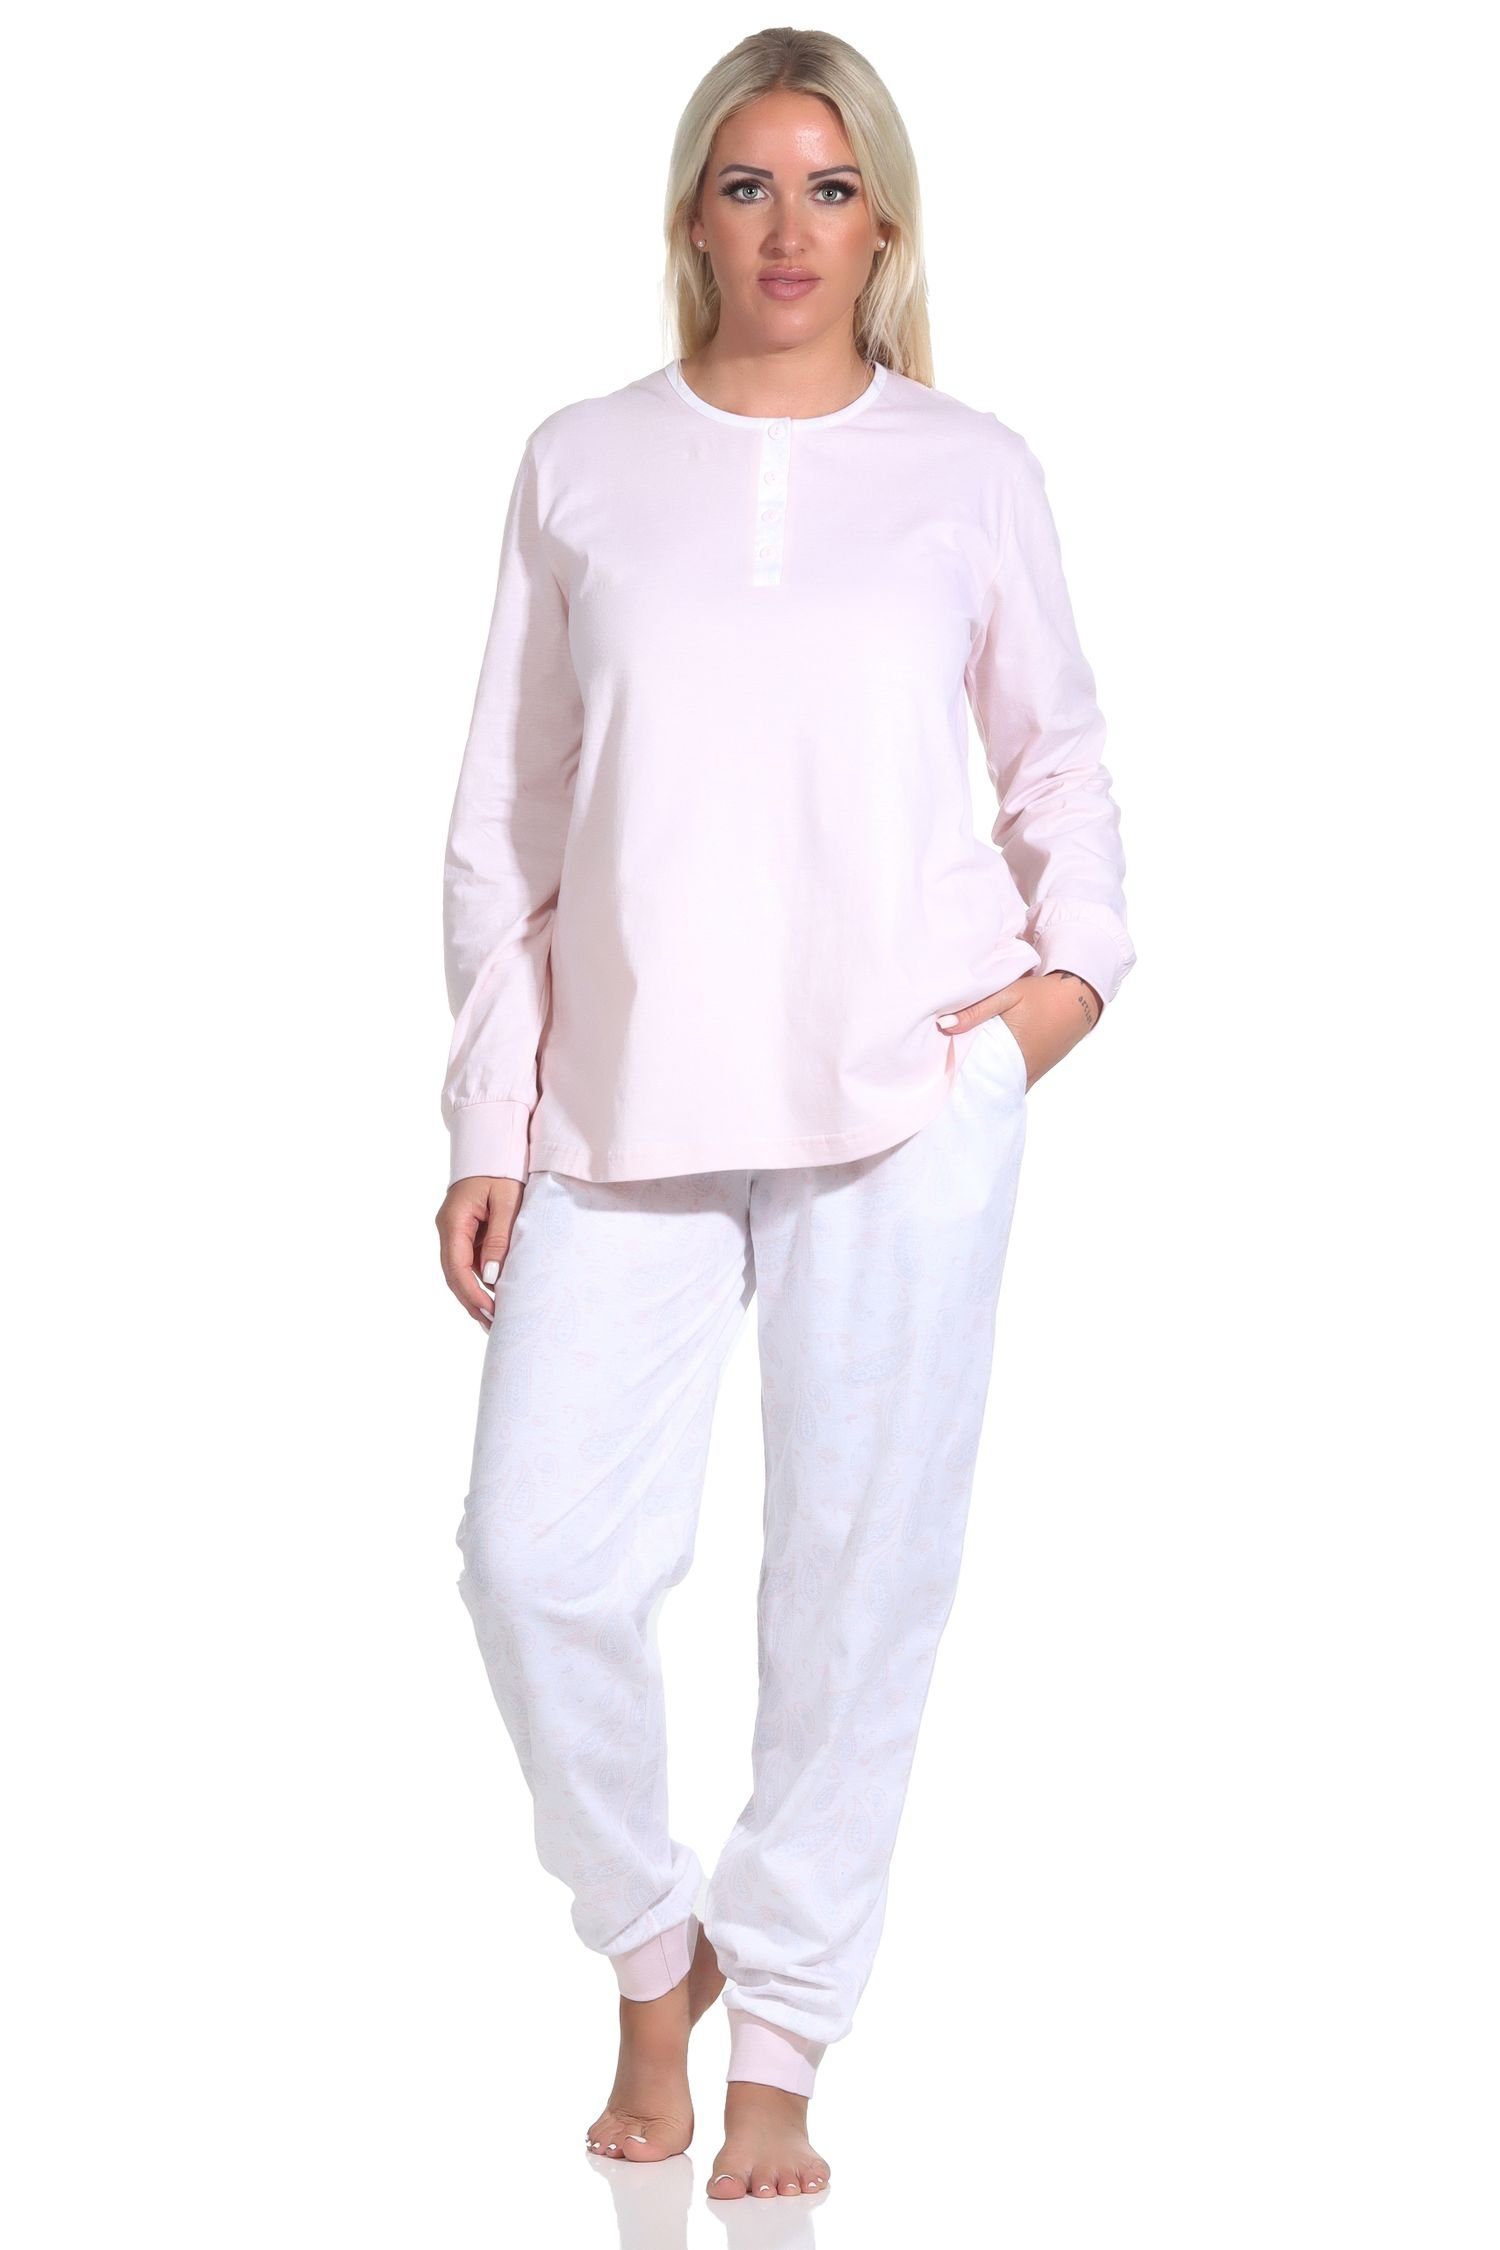 Hose Paysley Normann rosa mit gemusterter Pyjama + Knopfleiste langarm Damen Schlafanzug